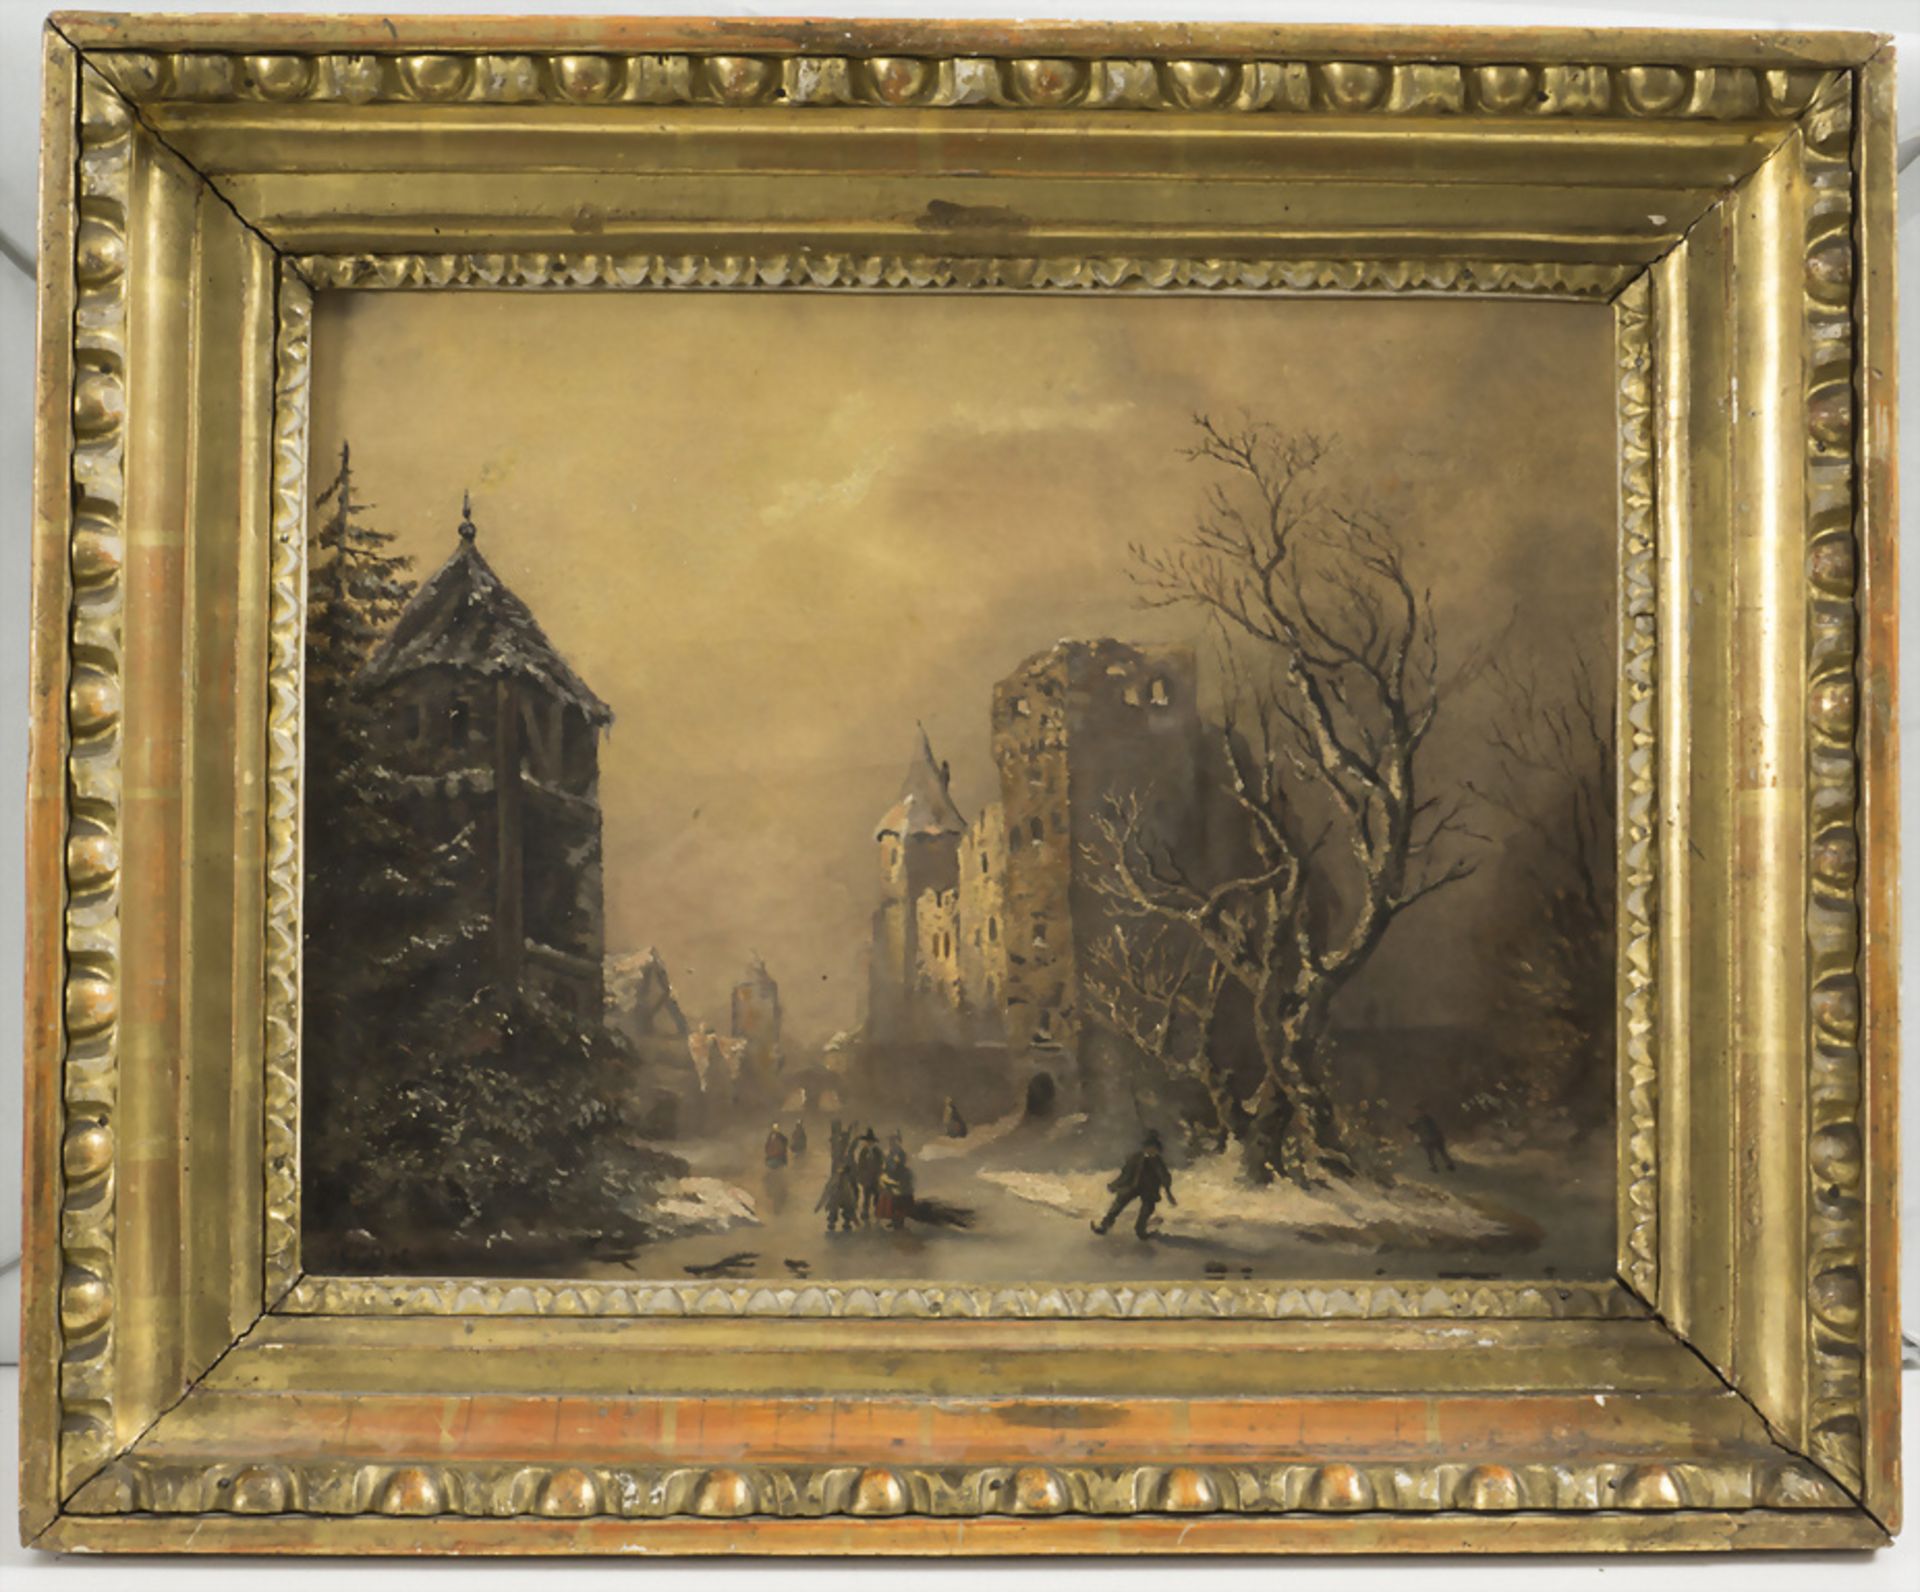 Monogrammist C.B., 'Dorf im Winter' / 'A village in wintertime', 1862. - Image 2 of 5